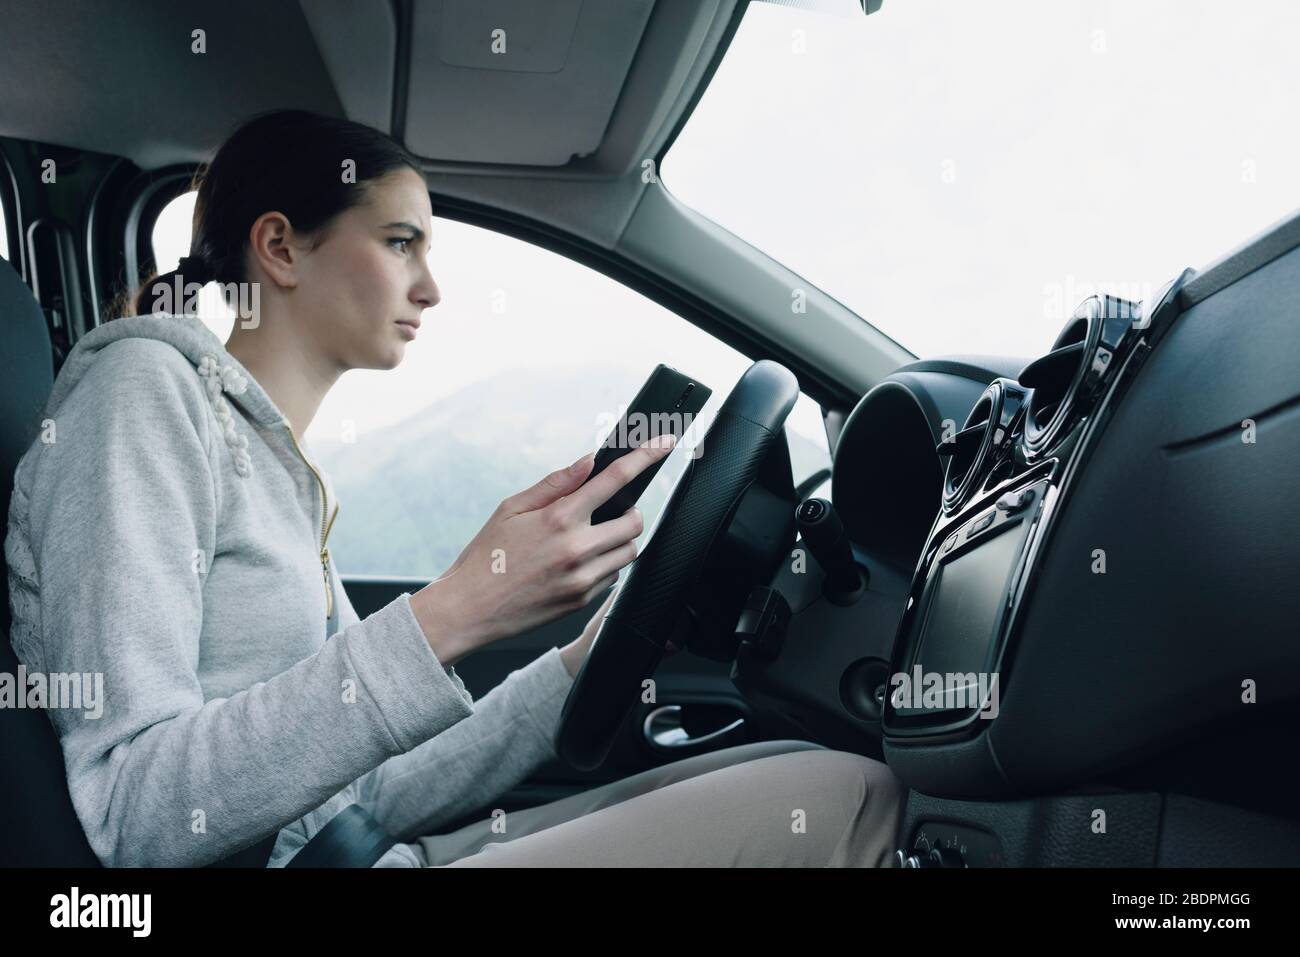 La jeune femme méprise et négligente utilise son smartphone pendant la conduite, en conduisant le concept de sécurité Banque D'Images